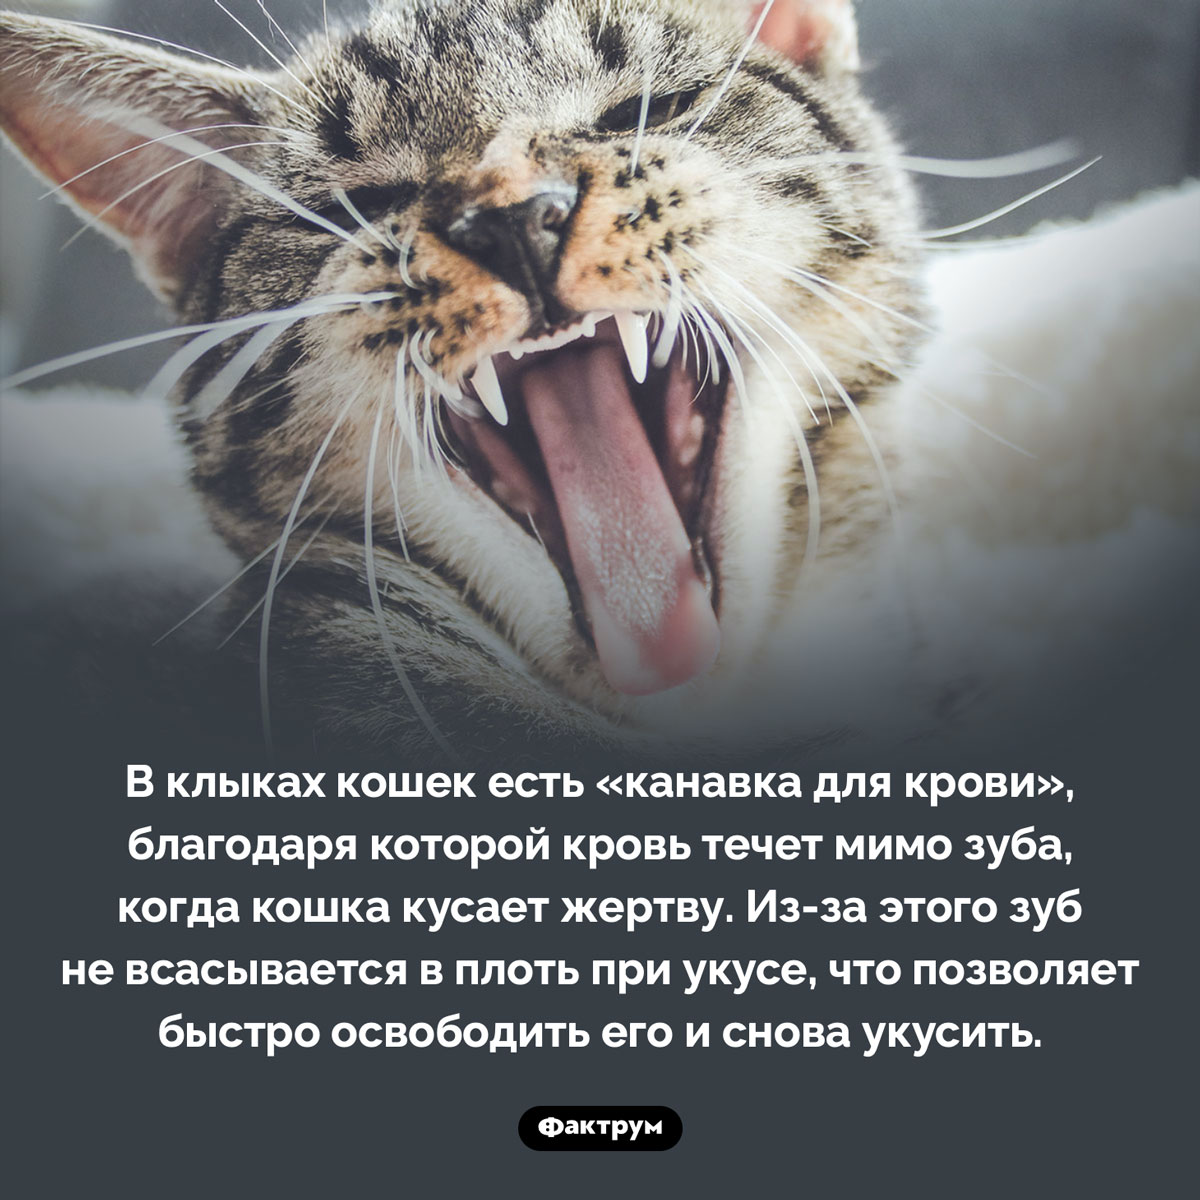 Особенность кошачьего клыка. В клыках кошек есть «канавка для крови», благодаря которой кровь течет мимо зуба, когда кошка кусает жертву. Из-за этого зуб не всасывается в плоть при укусе, что позволяет быстро освободить его и снова укусить.